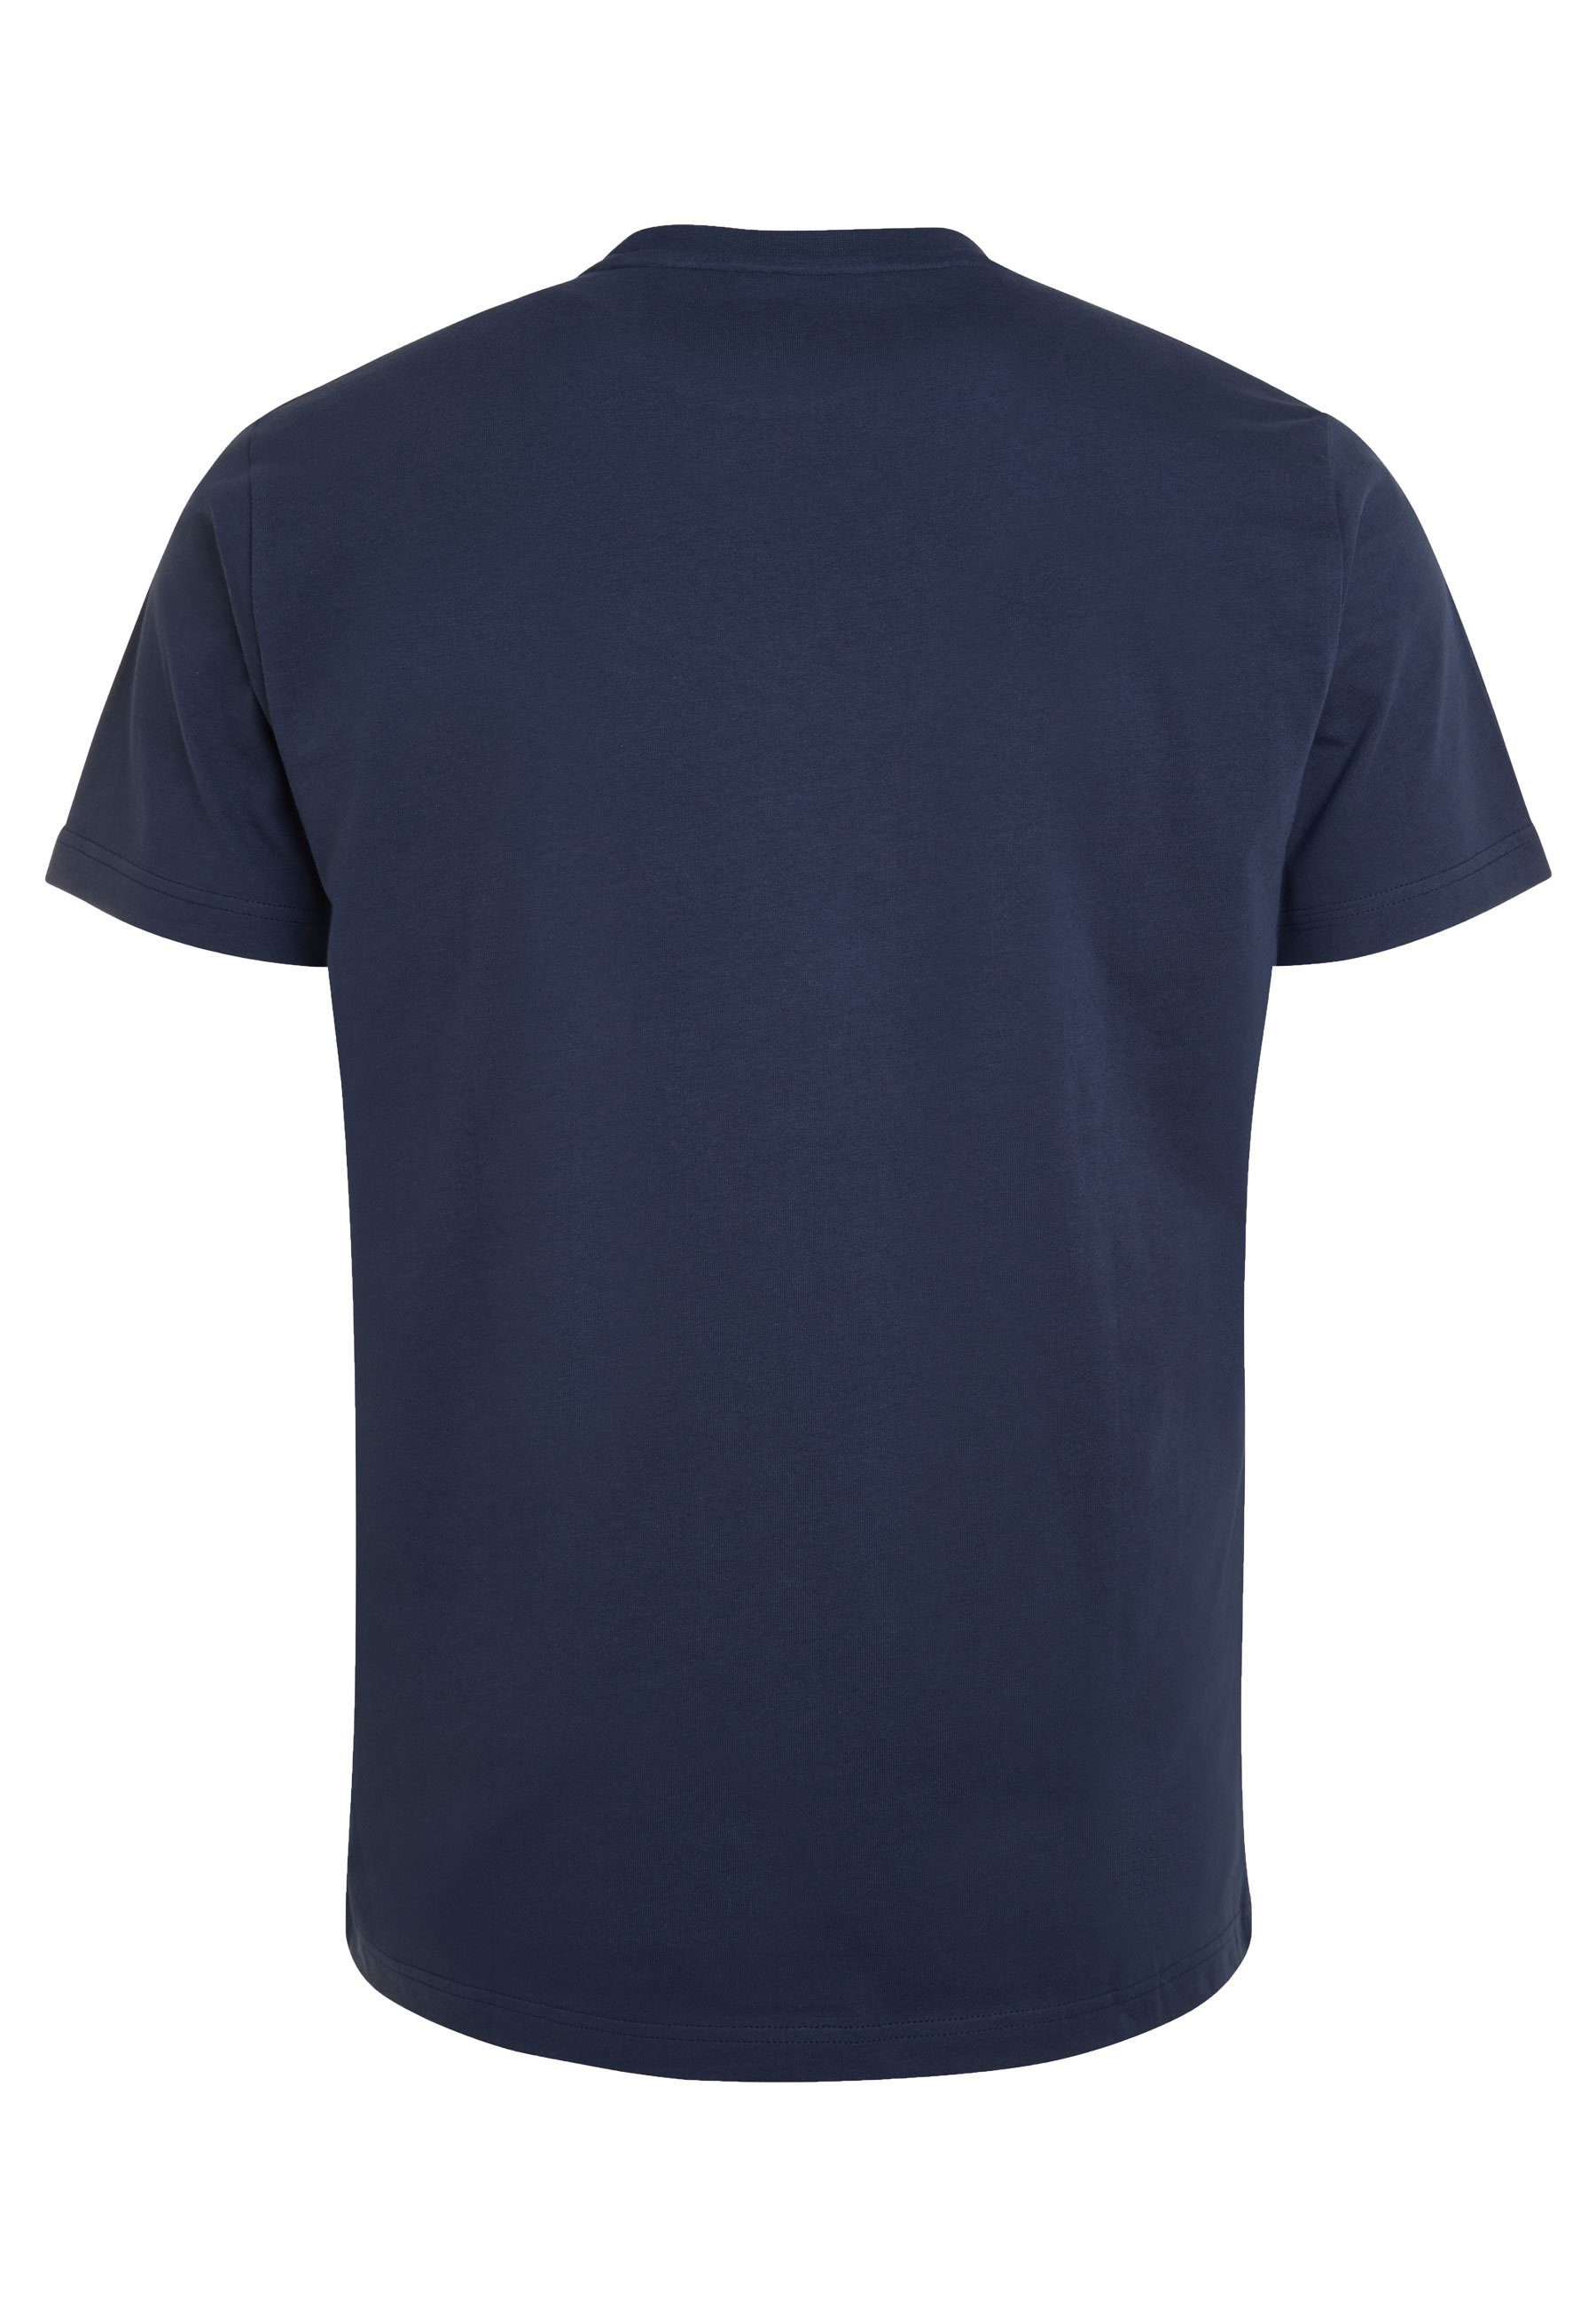 Shirt Have Must Elkline Uni-Farben T-Shirt Basic darkblue